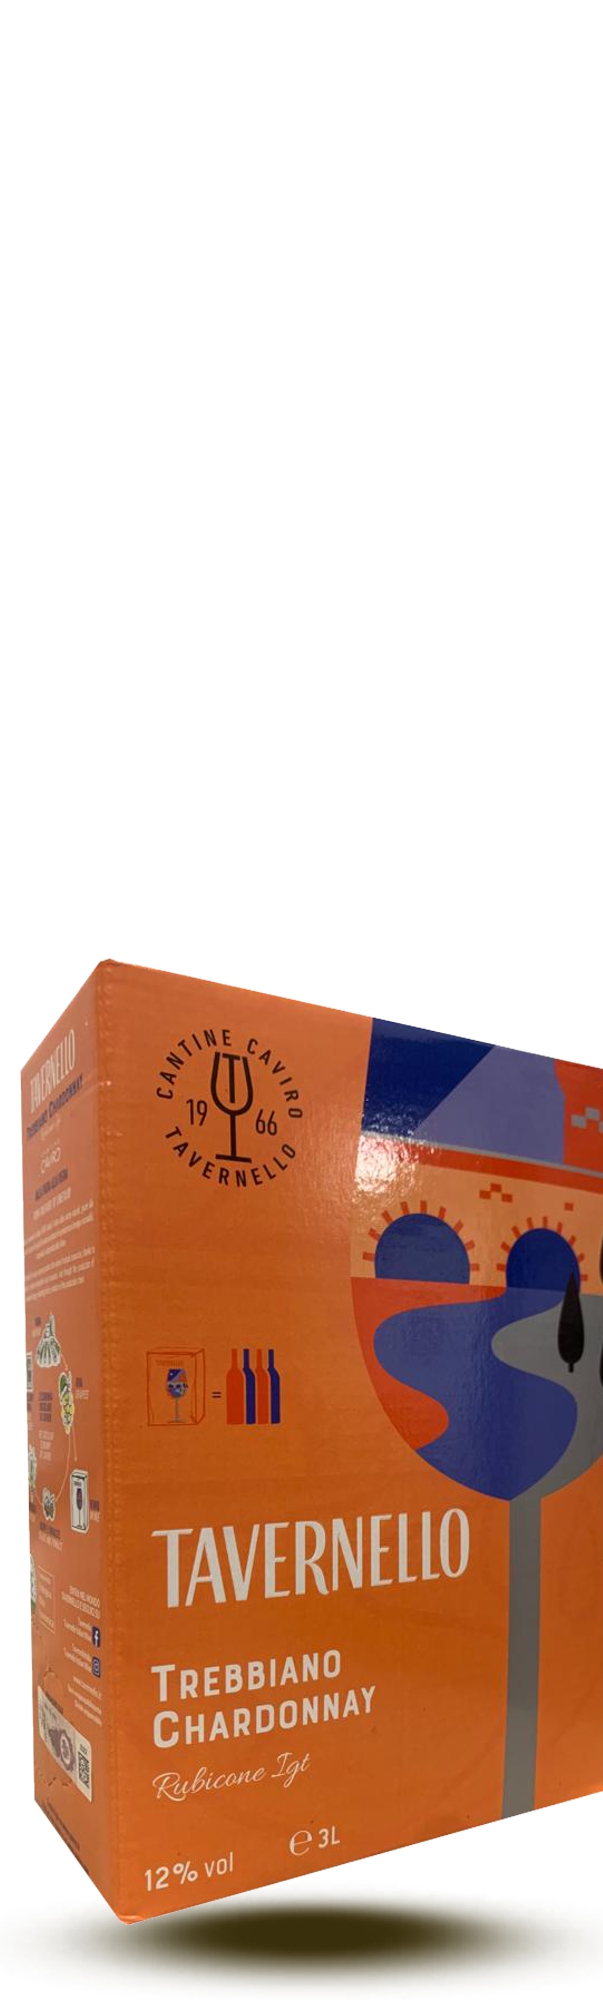 Tavernello Trebbiano Chardonnay Rubicone box